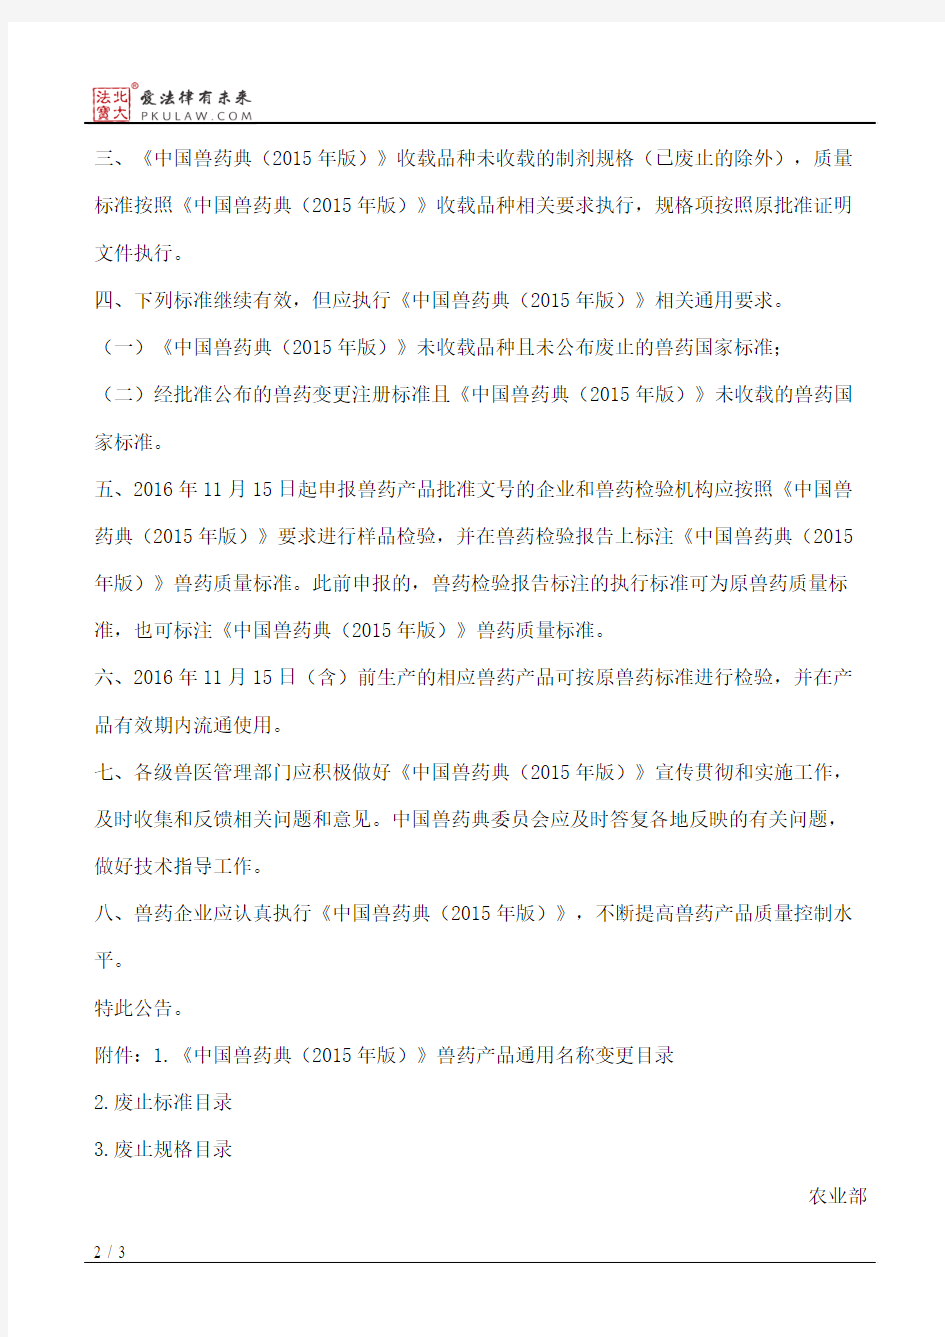 农业部公告第2438号――中华人民共和国兽药典(2015年版)